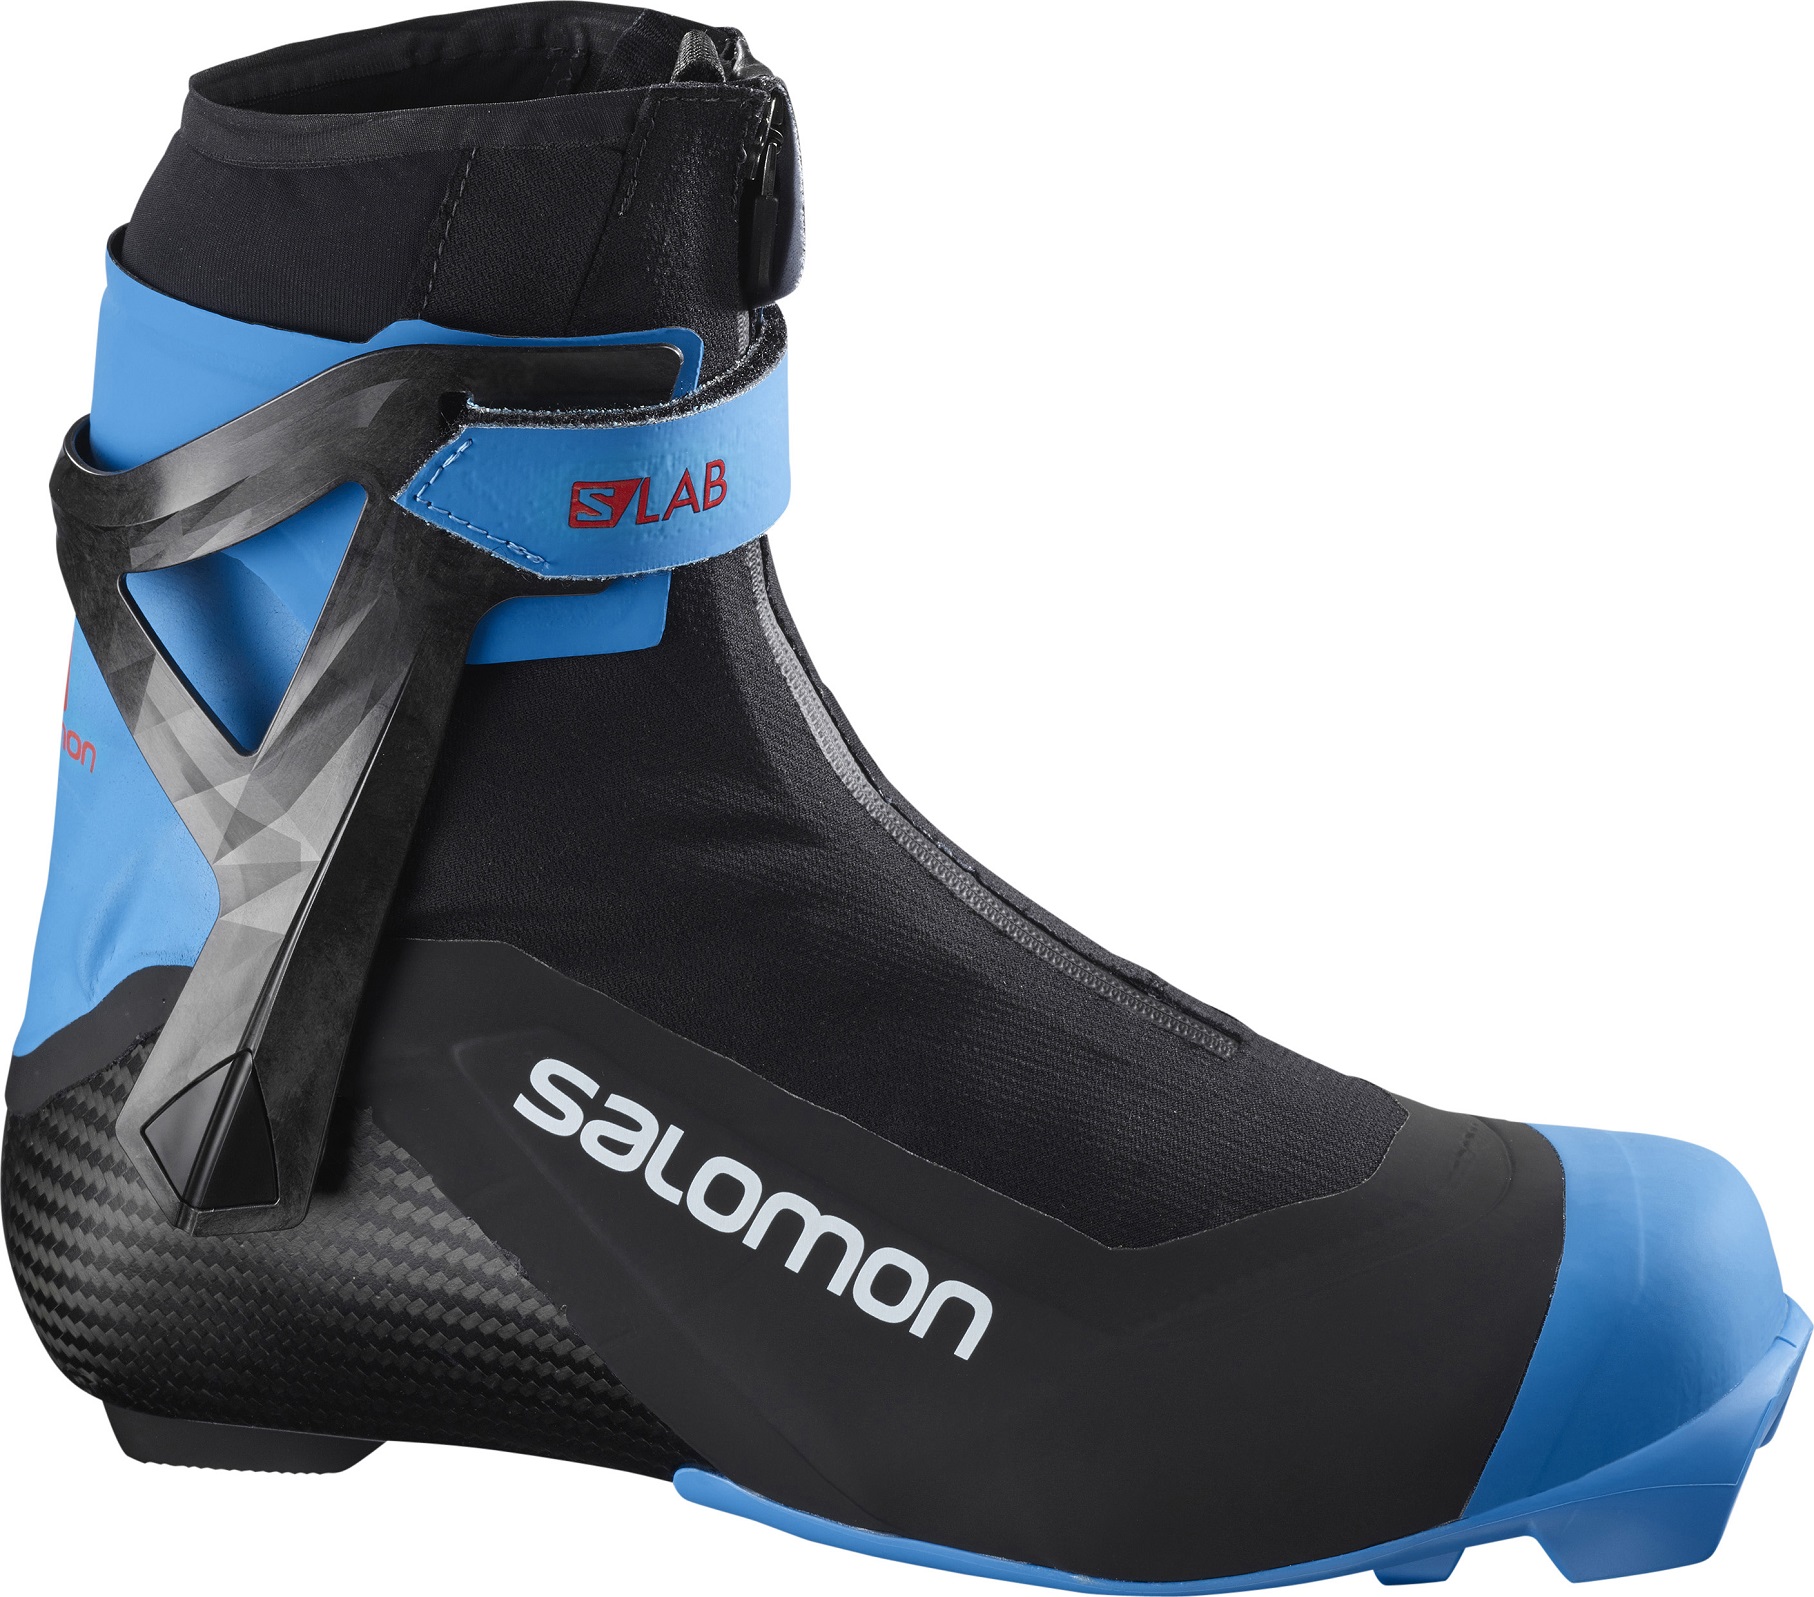 Ботинки для беговых лыж Salomon S/Lab Carbon Skate Prolink 2021, black/blue, 43.5